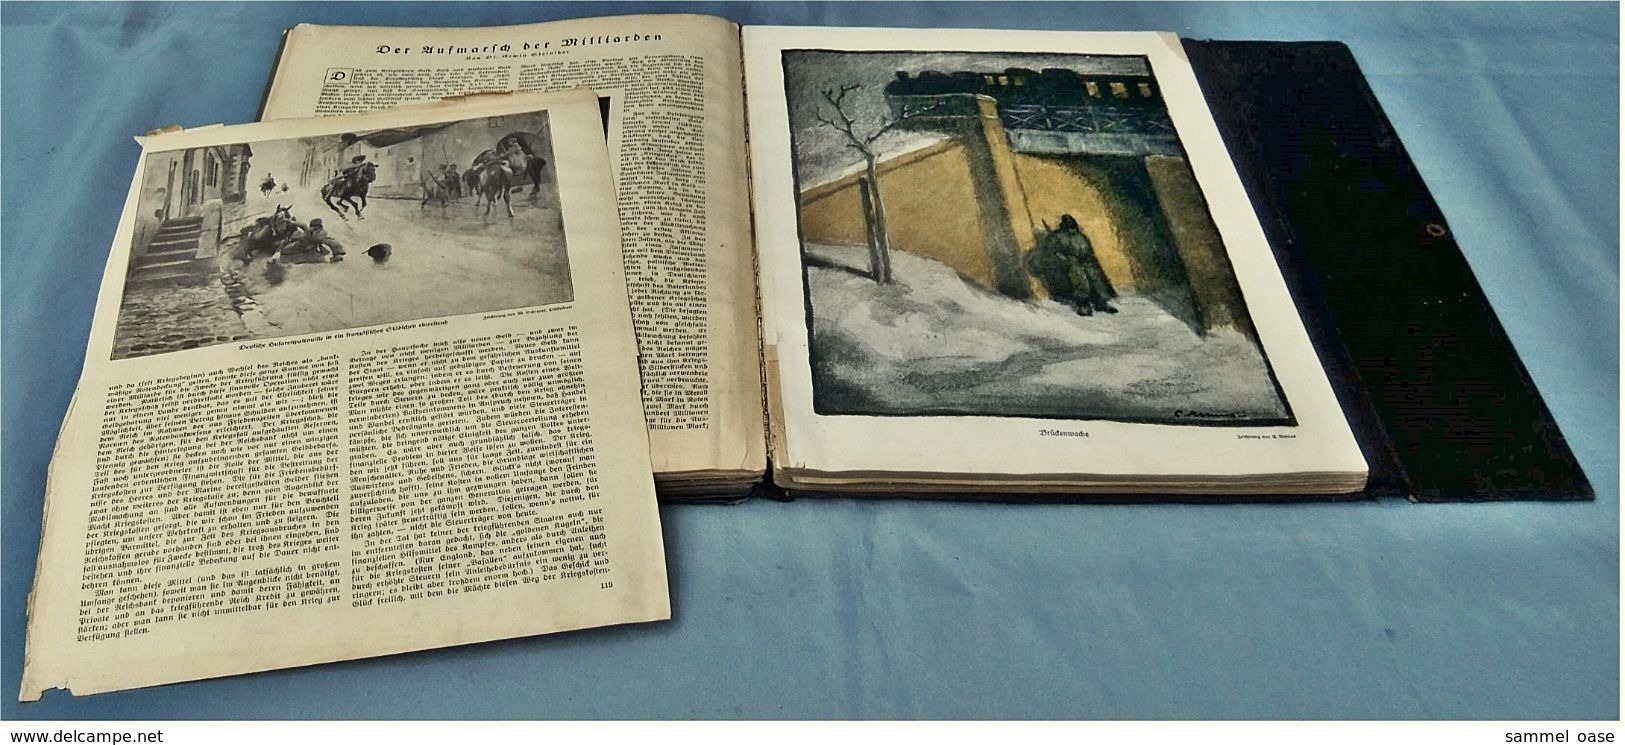 1915 Illustrierte Kriegsgeschichte Band 1 - Zahlreiche Bilder, Karten u. Kunstbeilagen - Mit Sammelordner-Teilen